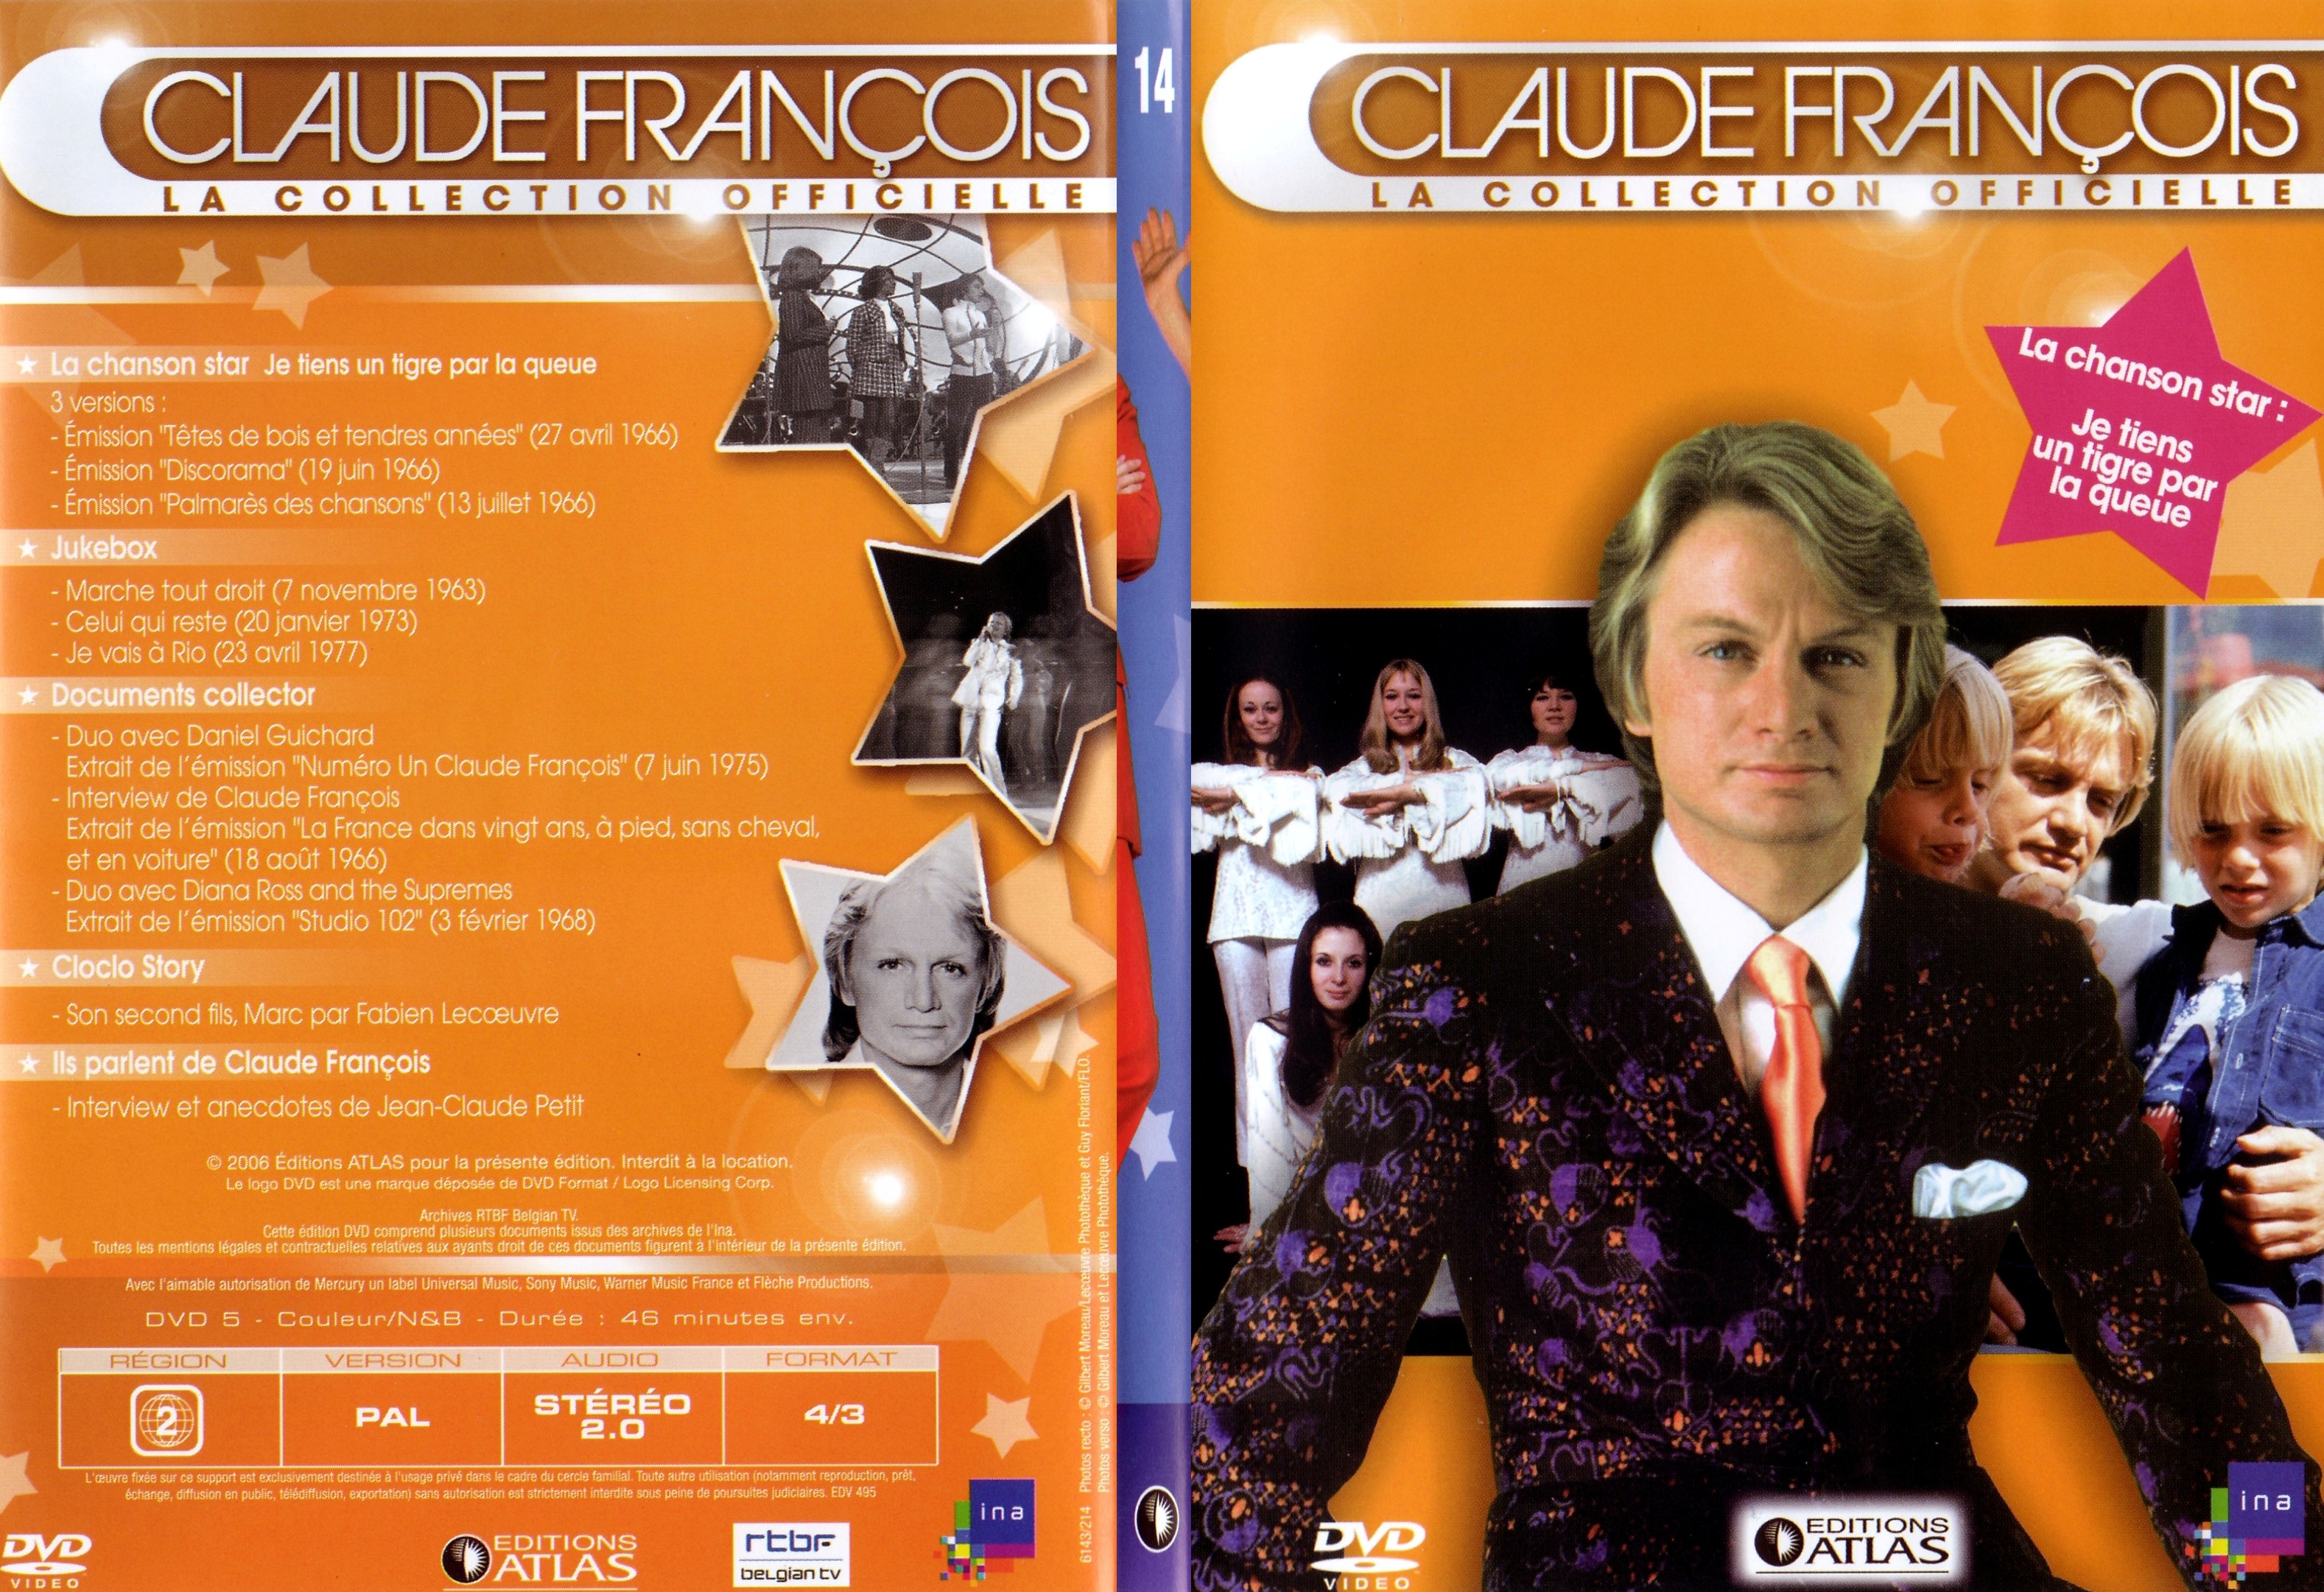 Jaquette DVD Claude francois le collection officielle vol 14 - SLIM